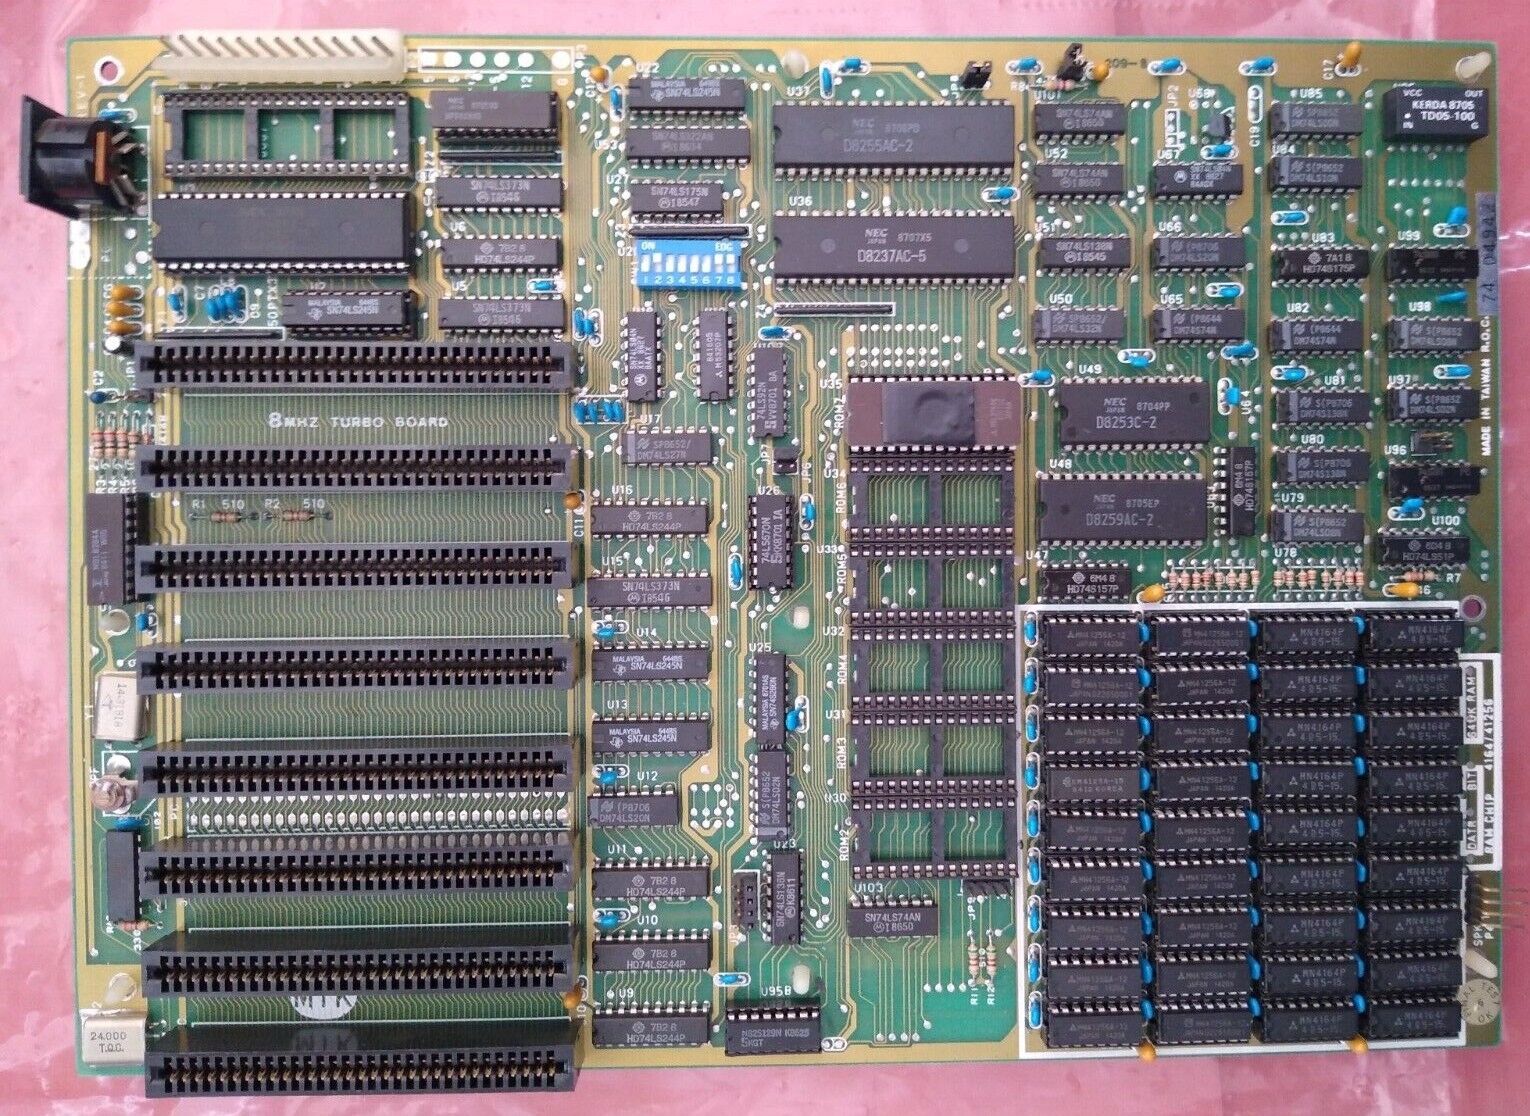 DTK EROS Turbo-XT motherboard 4.7-8MHz w/ 640K ram, fully functional